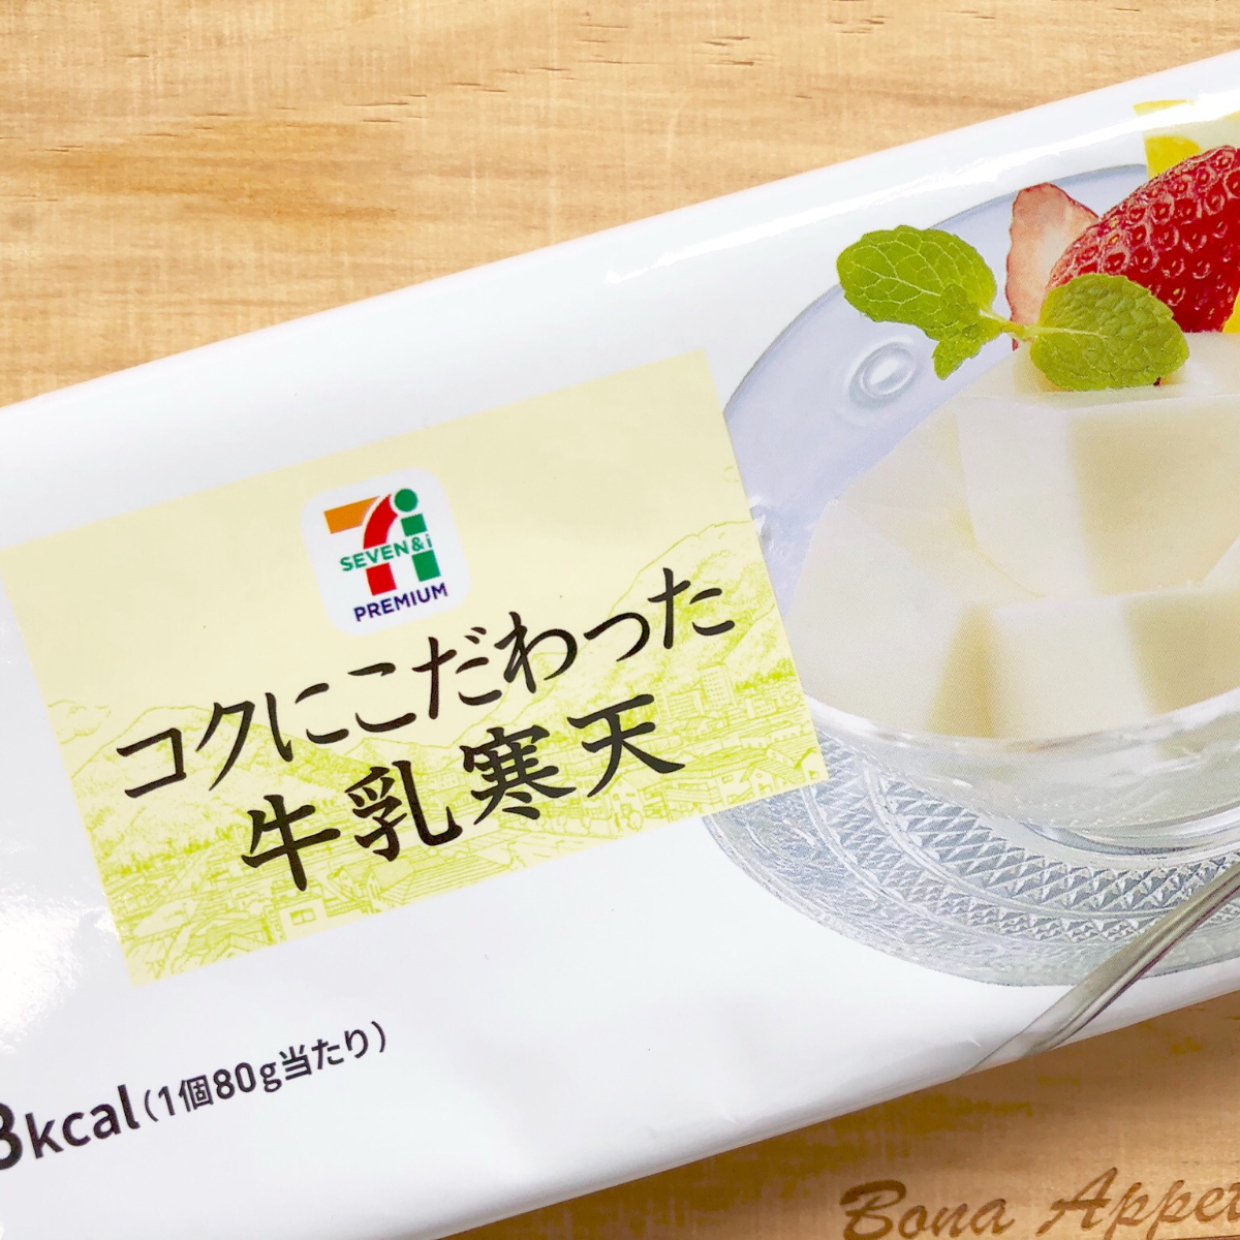  ¥170で幸せになれる味♡ セブンイレブンの牛乳寒天が至福のおいしさと話題 